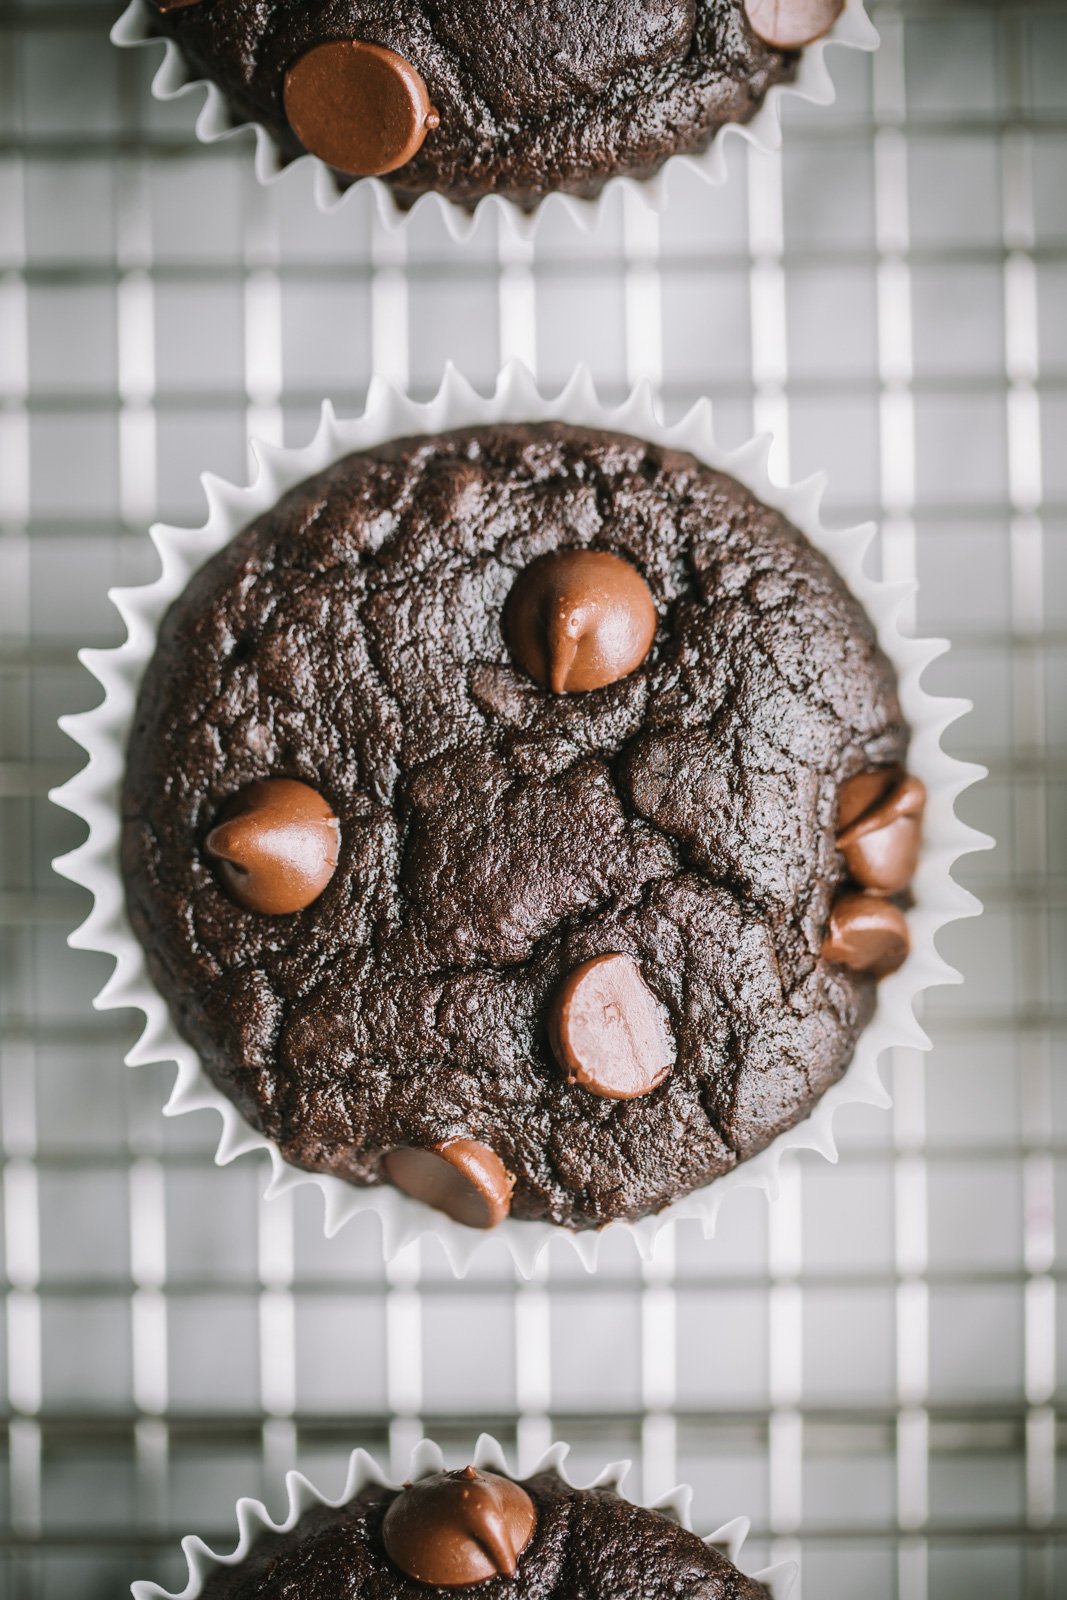 muffin de frijoles negros sin harina con chispas de chocolate sobre una rejilla